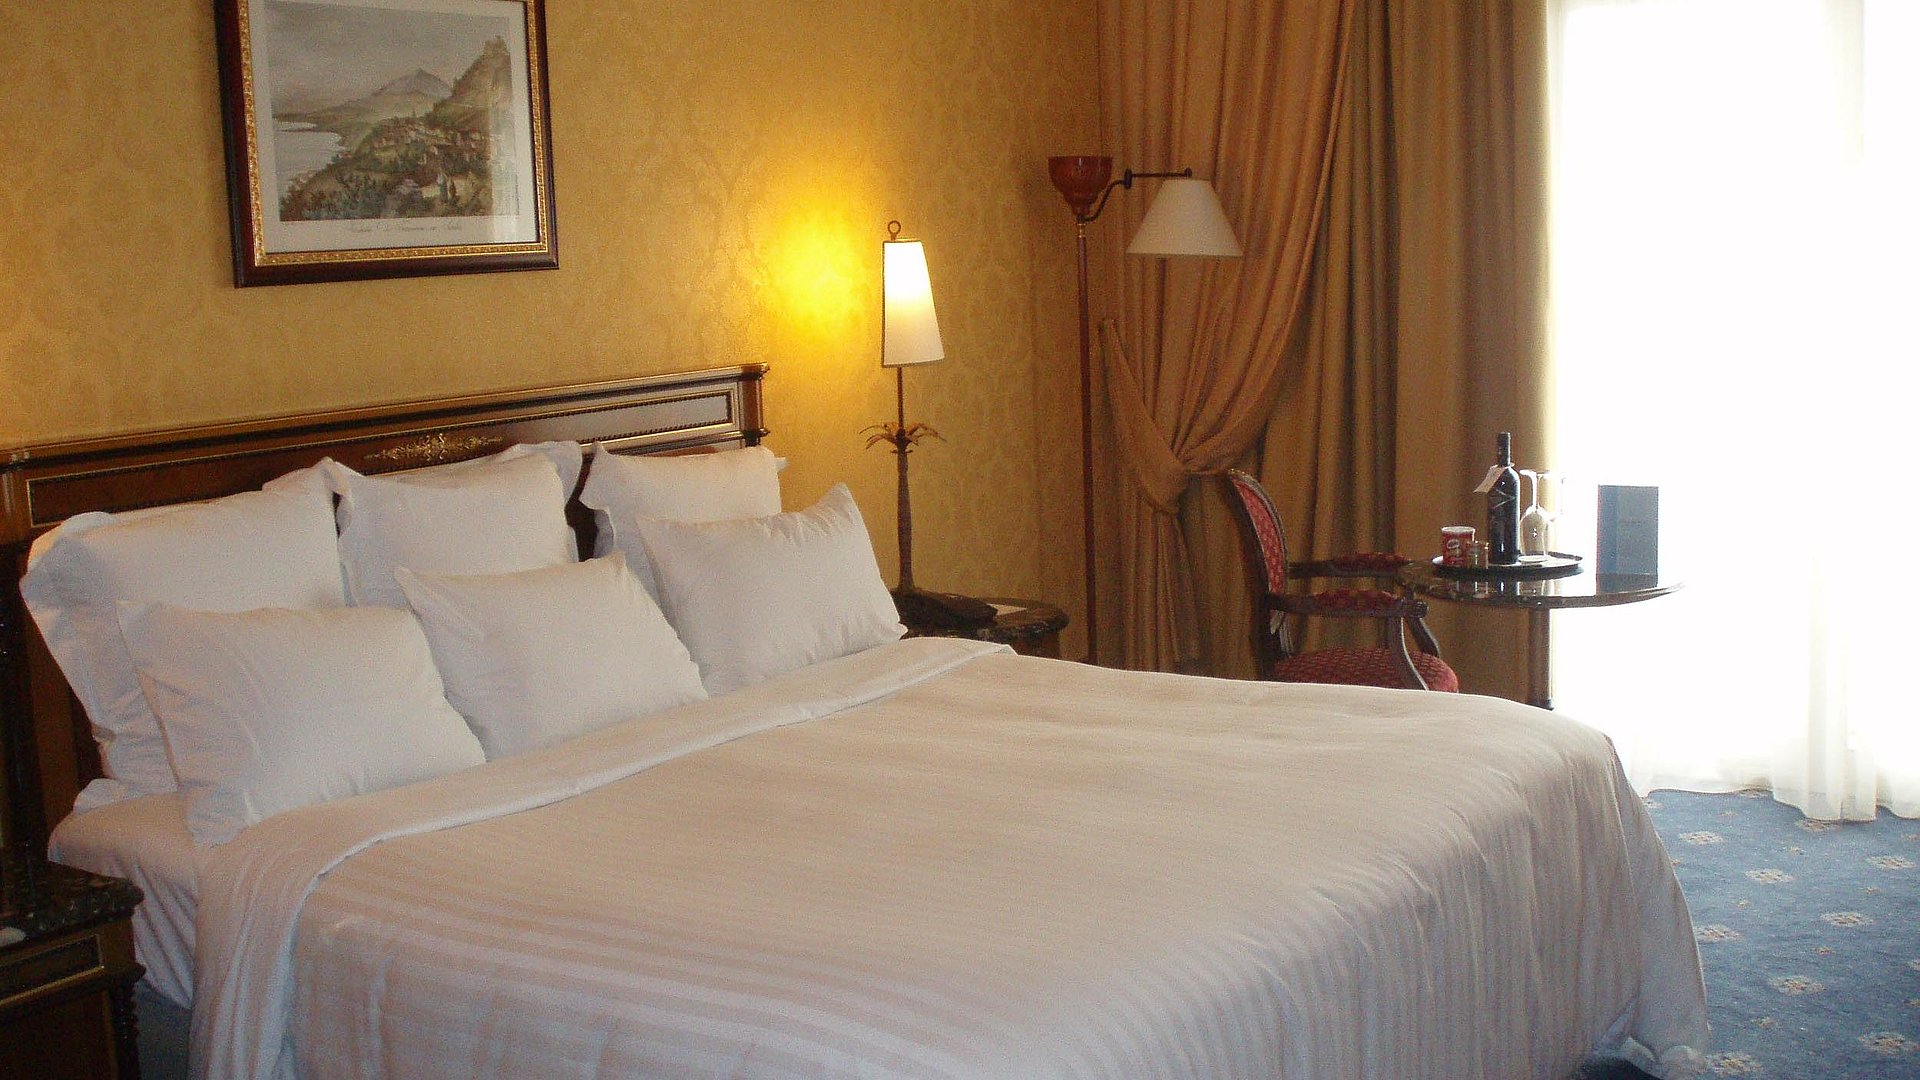 Pauschalangebote für Unterkünfte im Ostallgäu - sehr ordentliches Hotelzimmer mit großem Bett und warmer Nachtlampe wird durch weiße Gardinen durchleuchtet